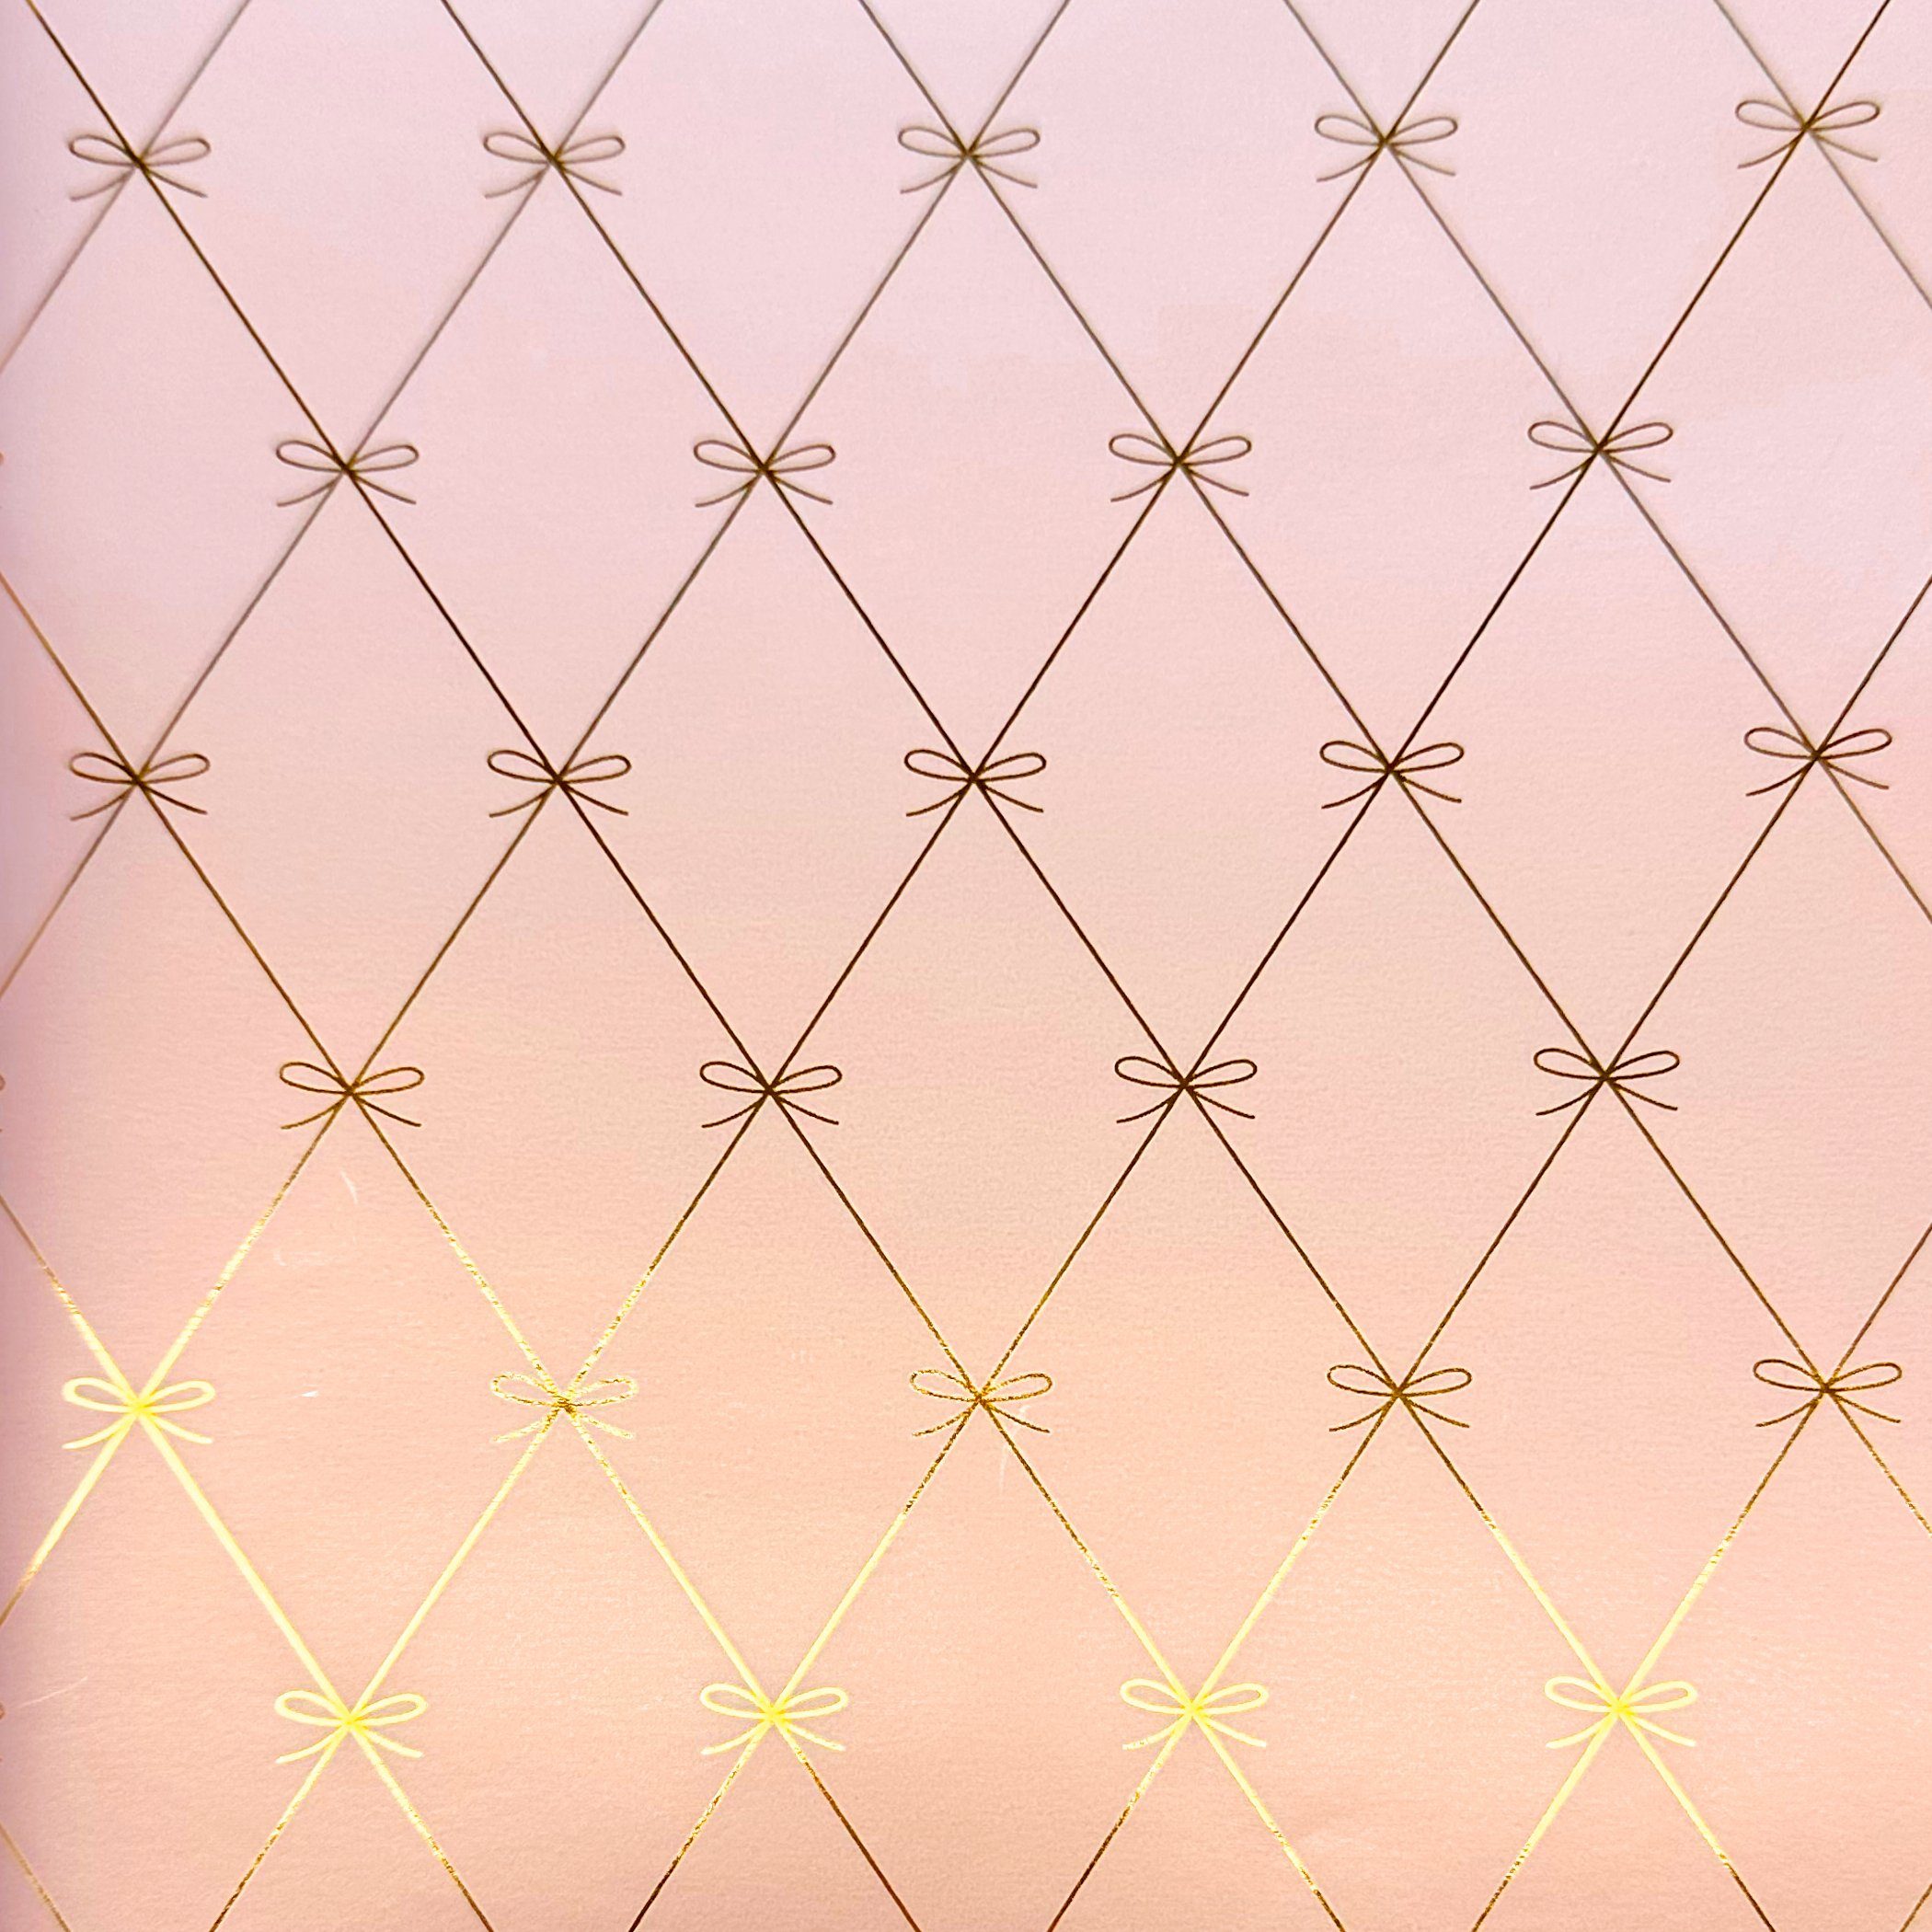 Star Geschenkpapier, Geschenkpapier mit Schleifen Muster 70cm x 2m Rolle rosa metallic matt